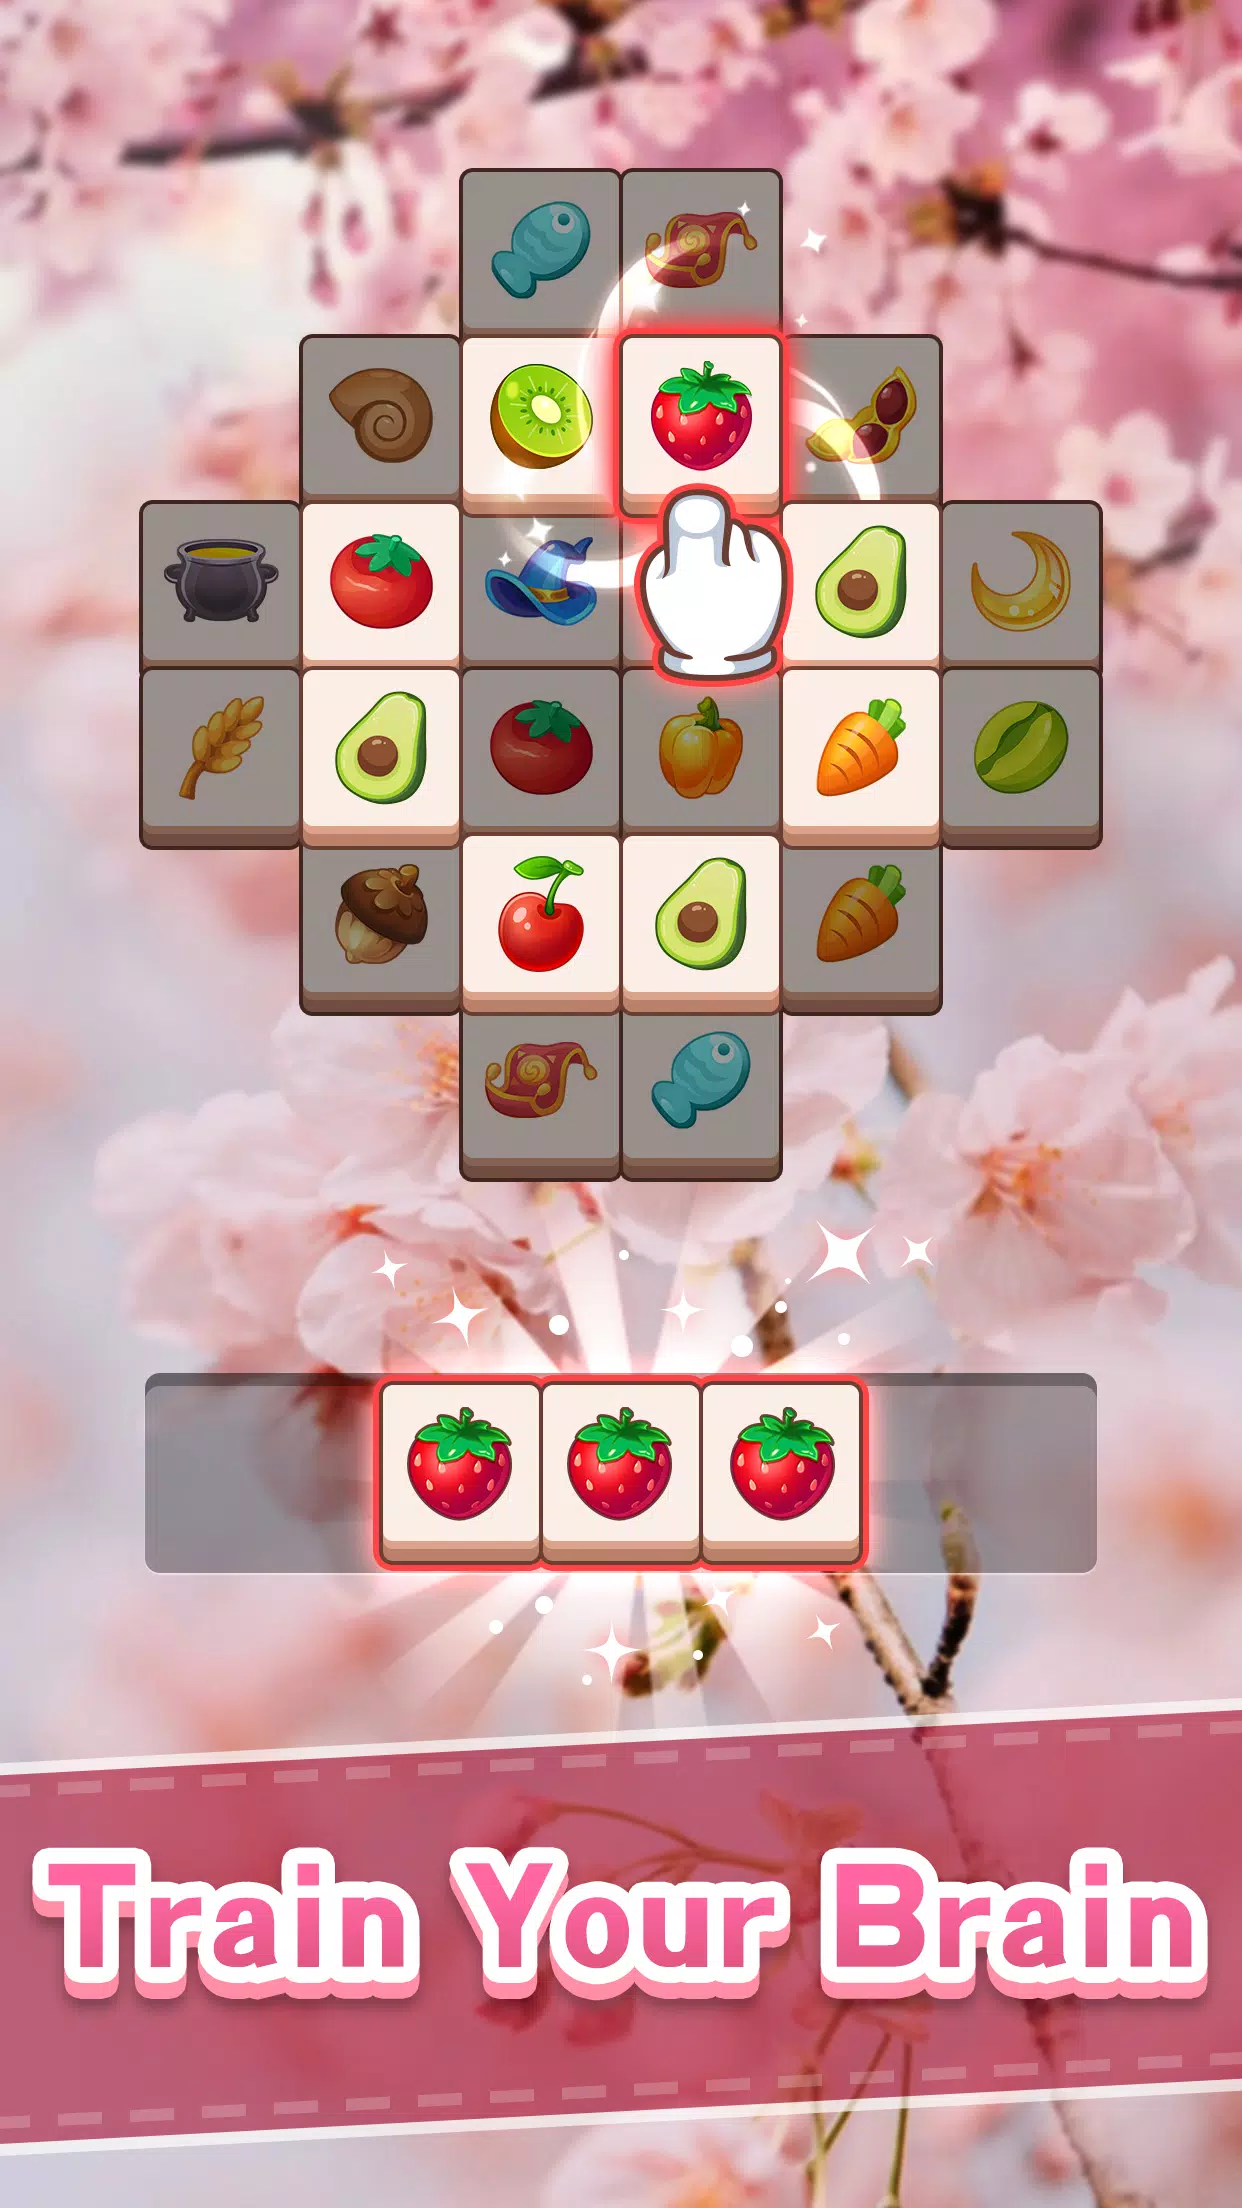 Mahjong 3D Box para Android - Baixe o APK na Uptodown